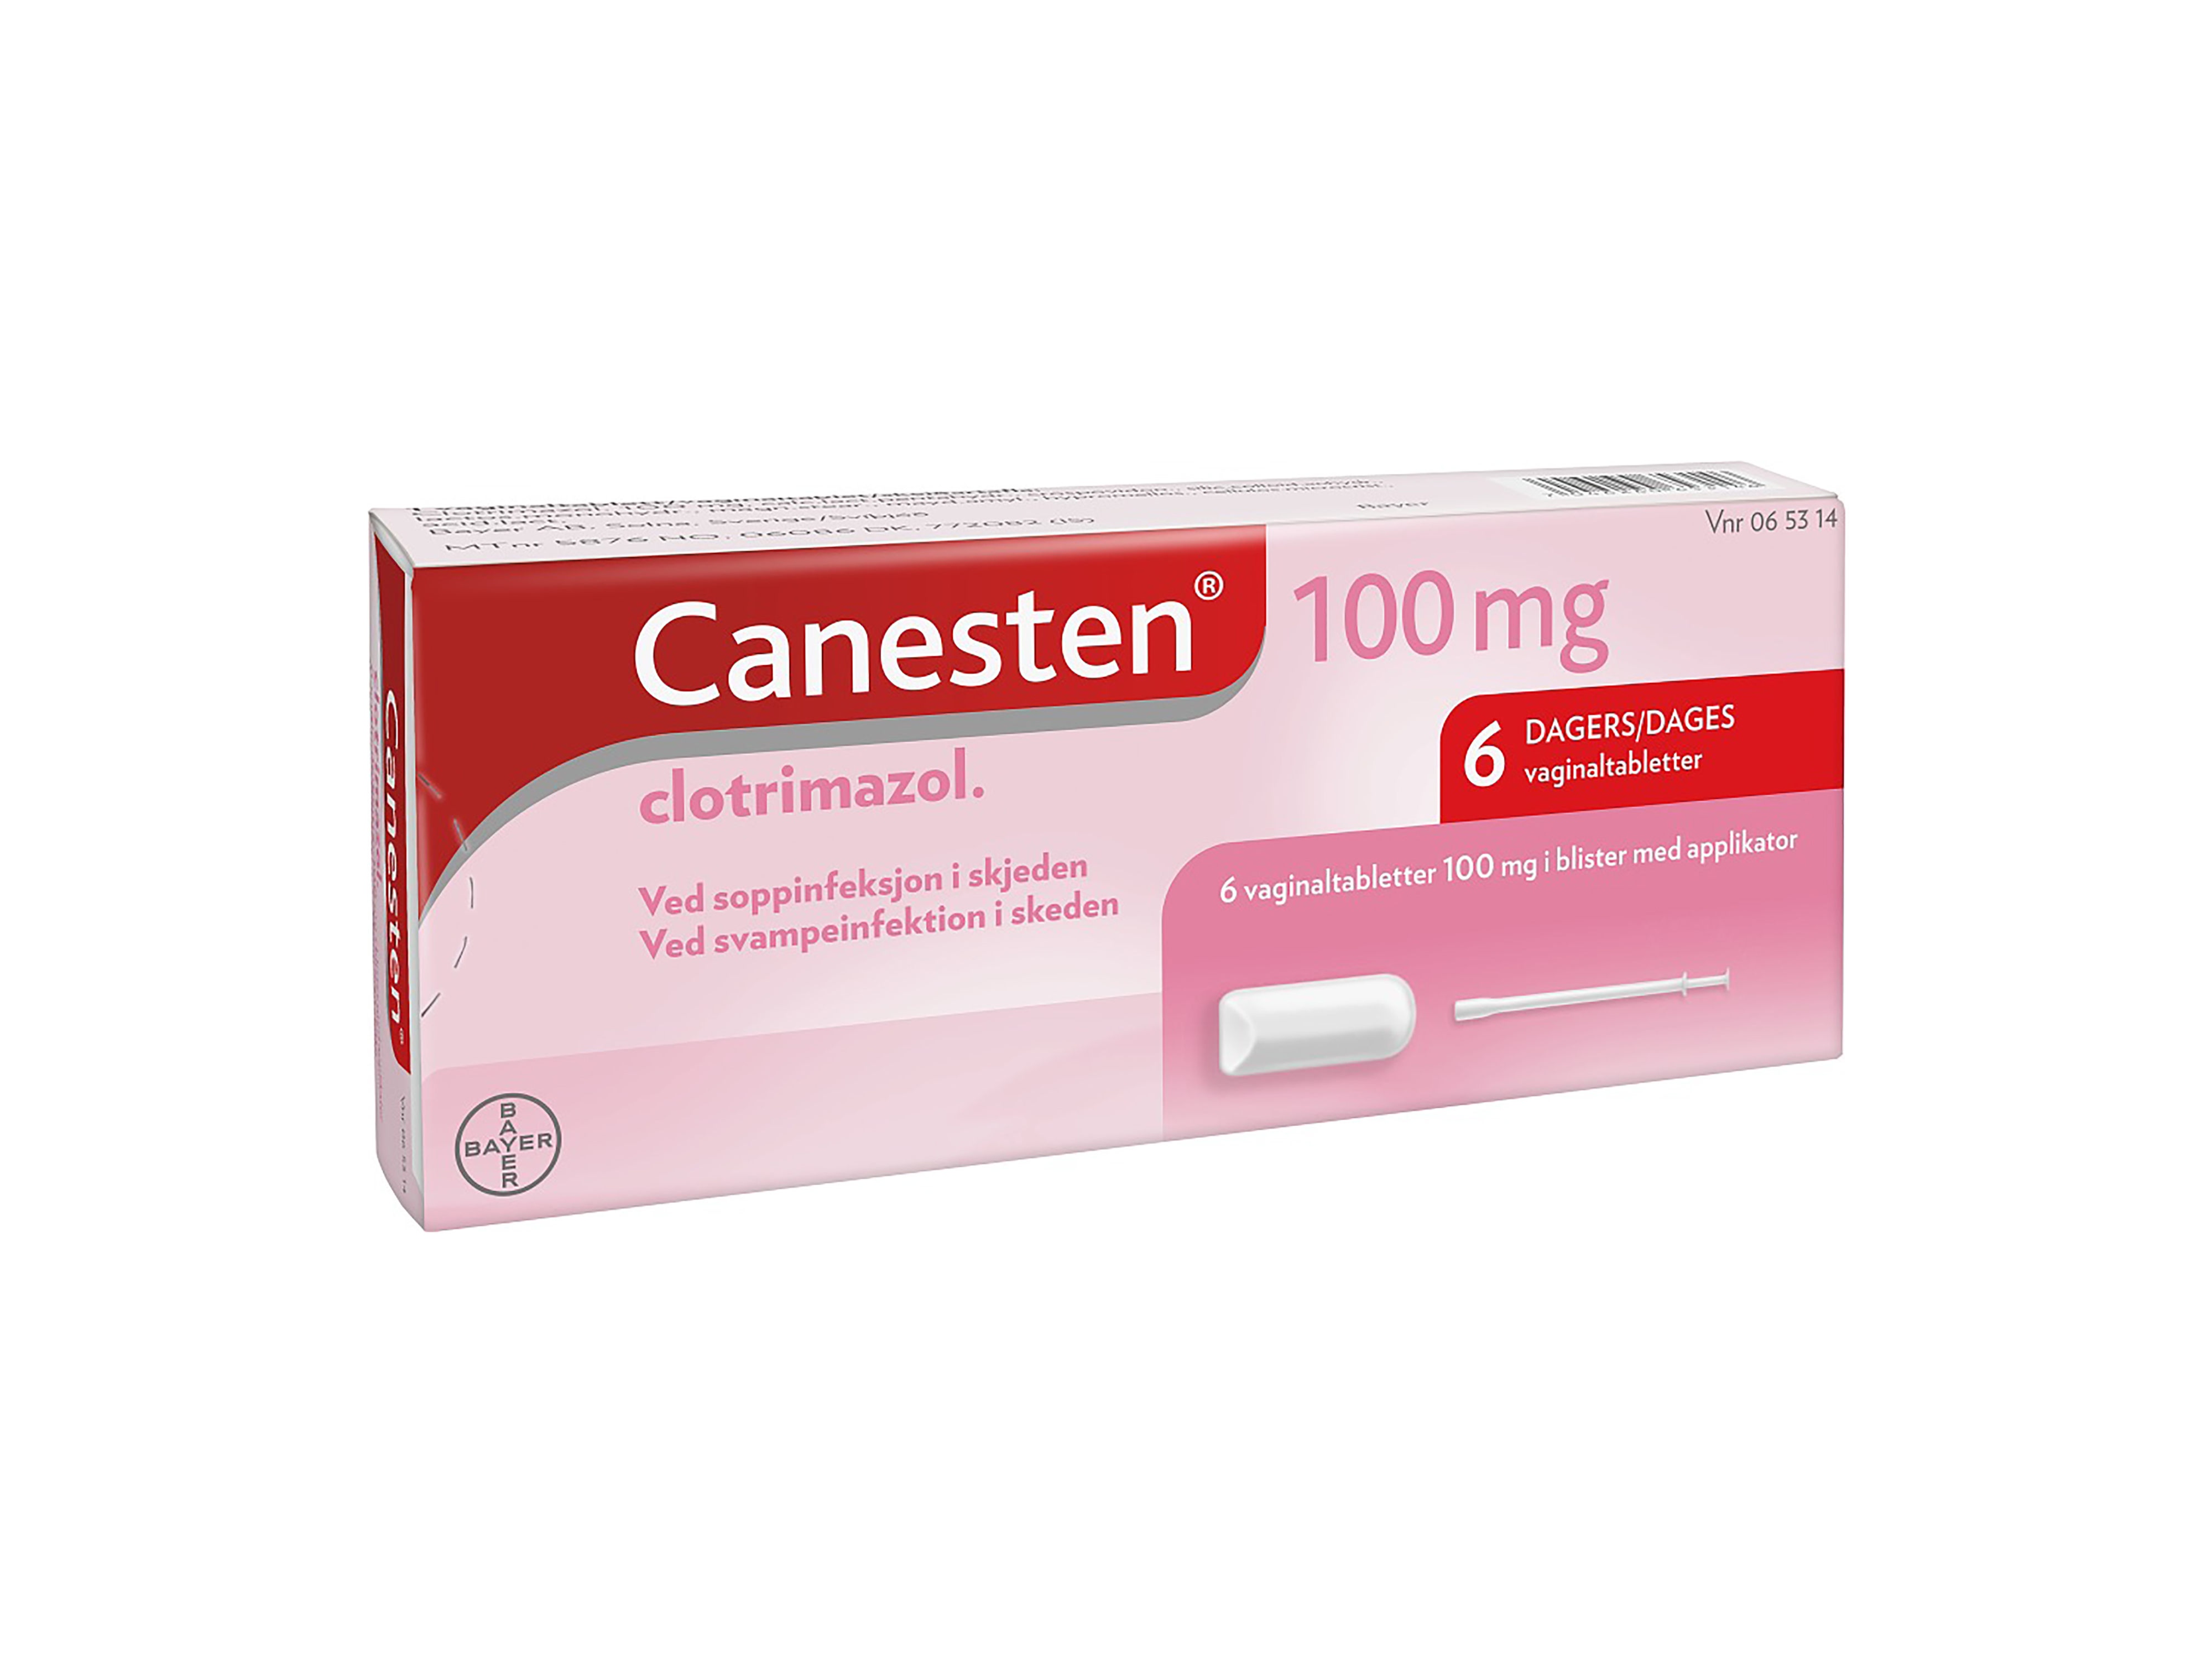 Canesten 100 mg vaginaltabletter, 6 stk.